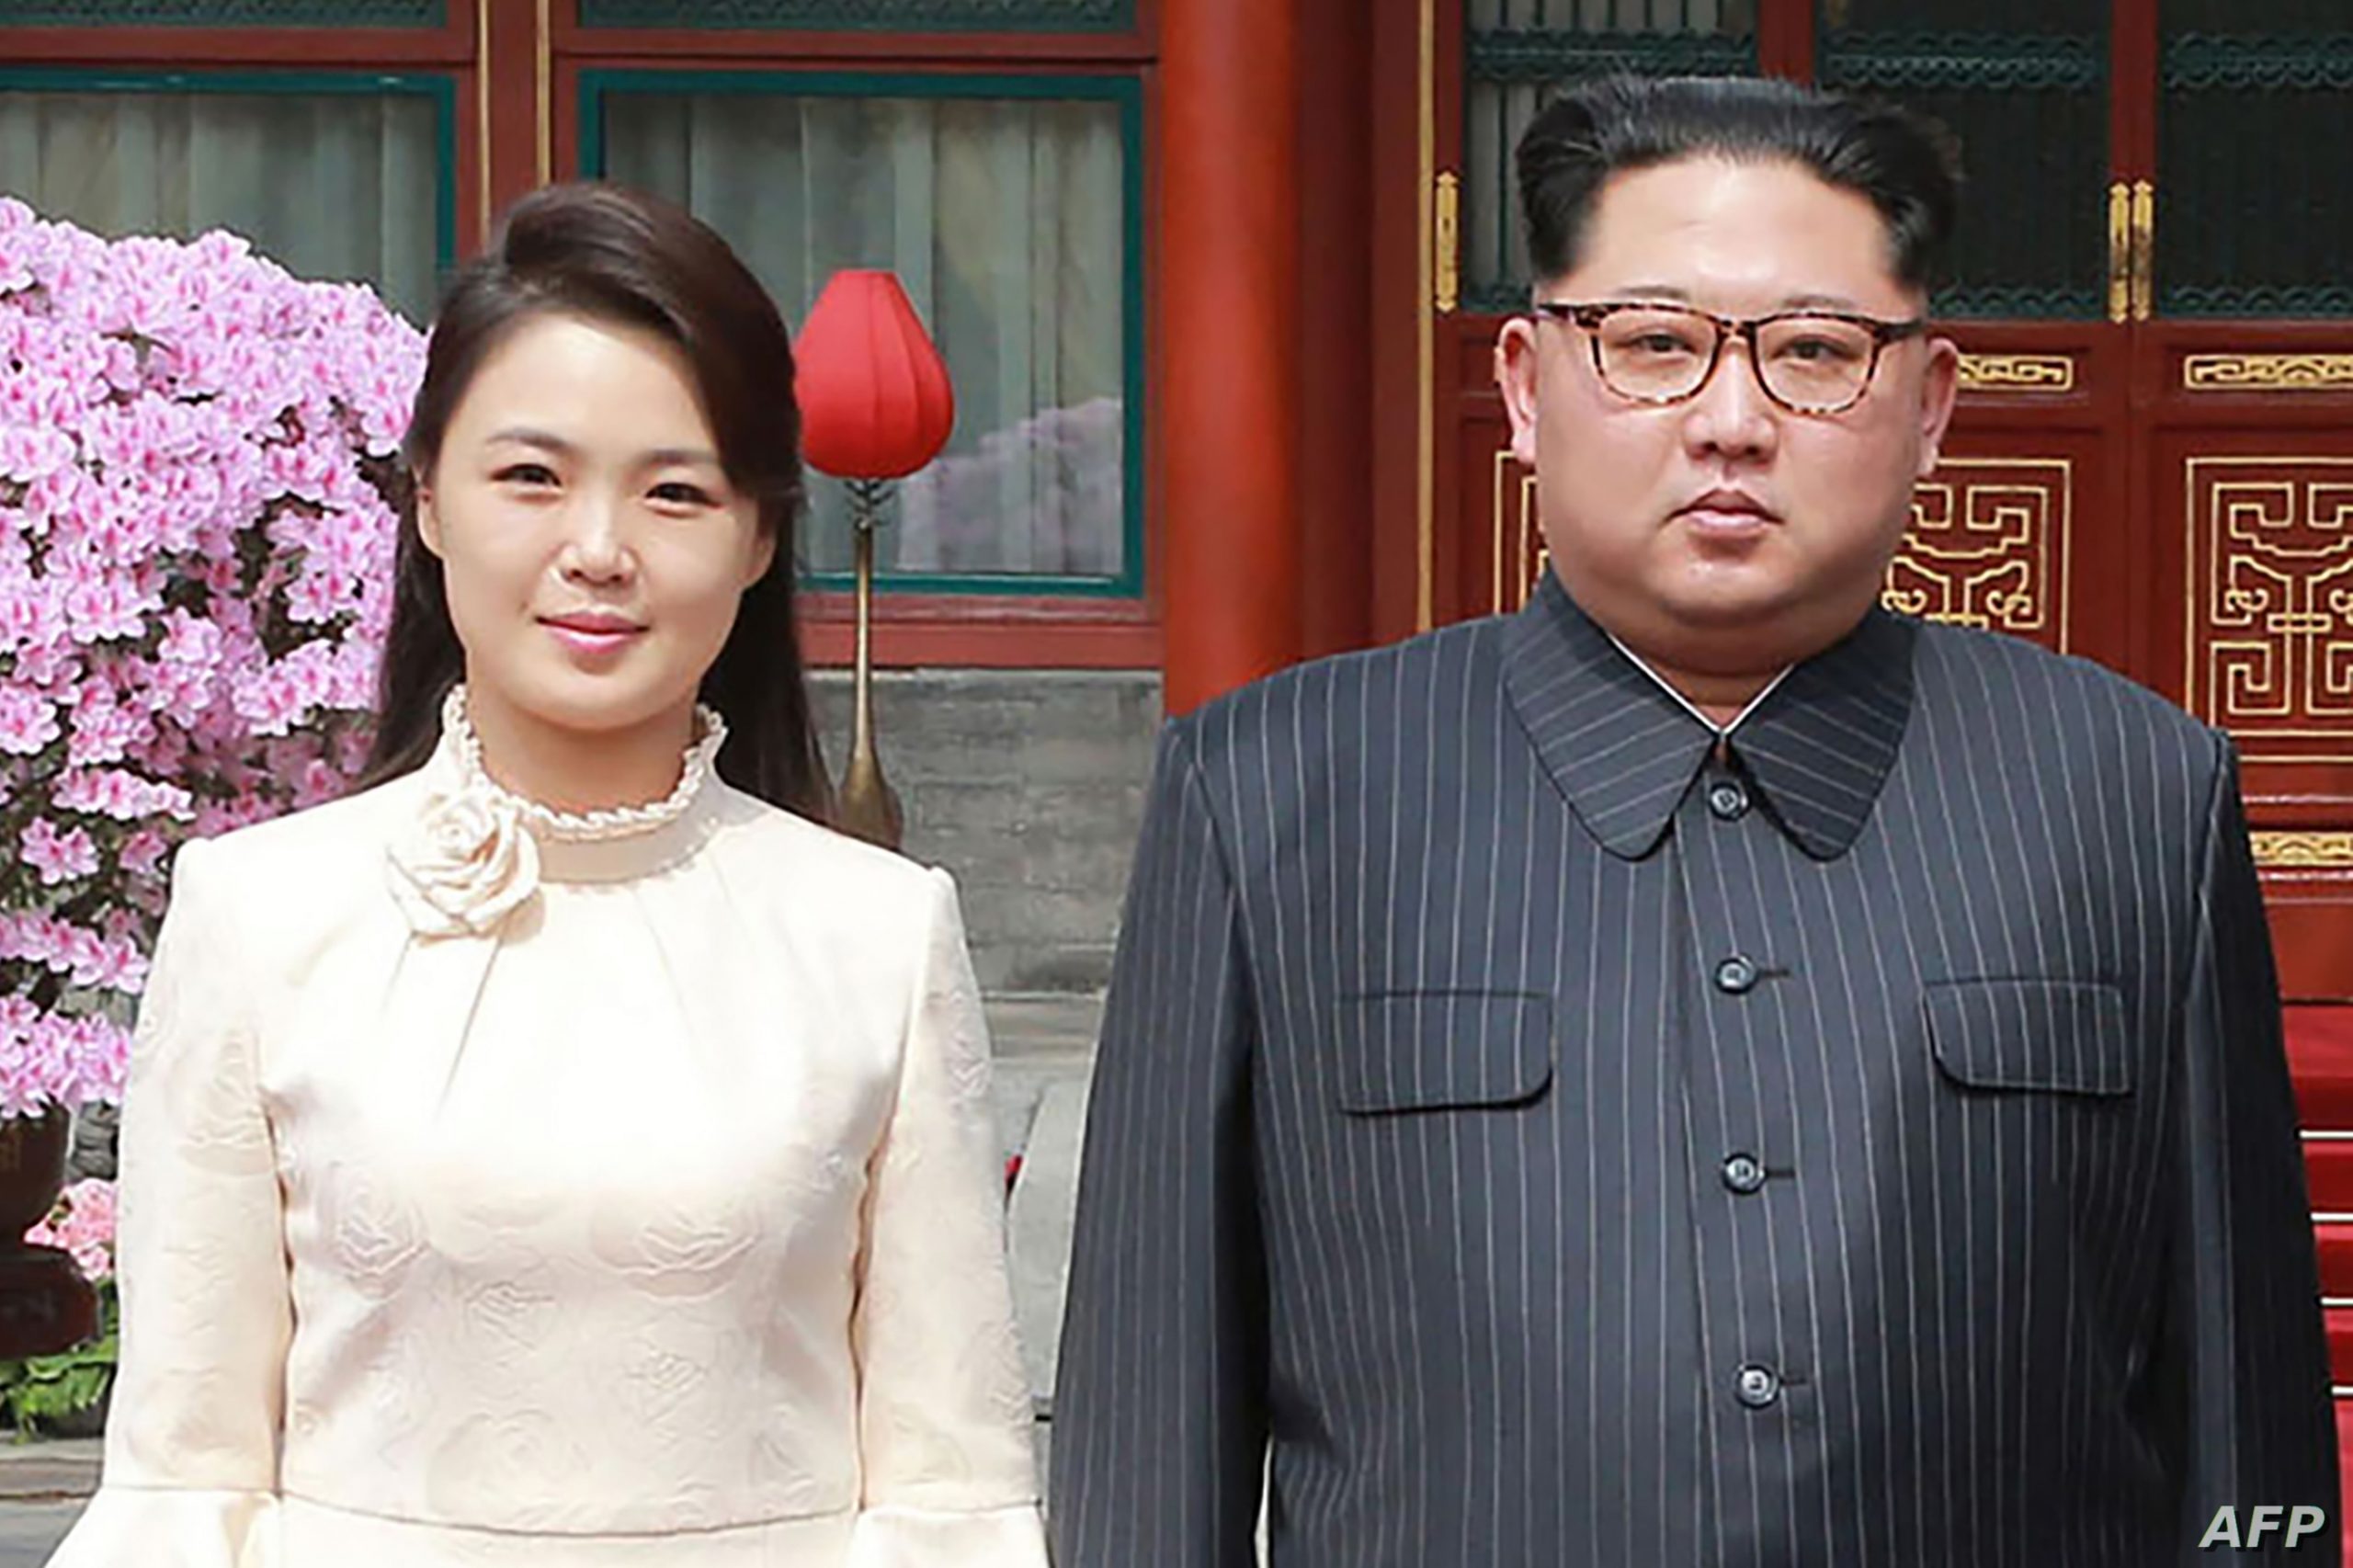 من هي زوجة رئيس كوريا الشمالية؟